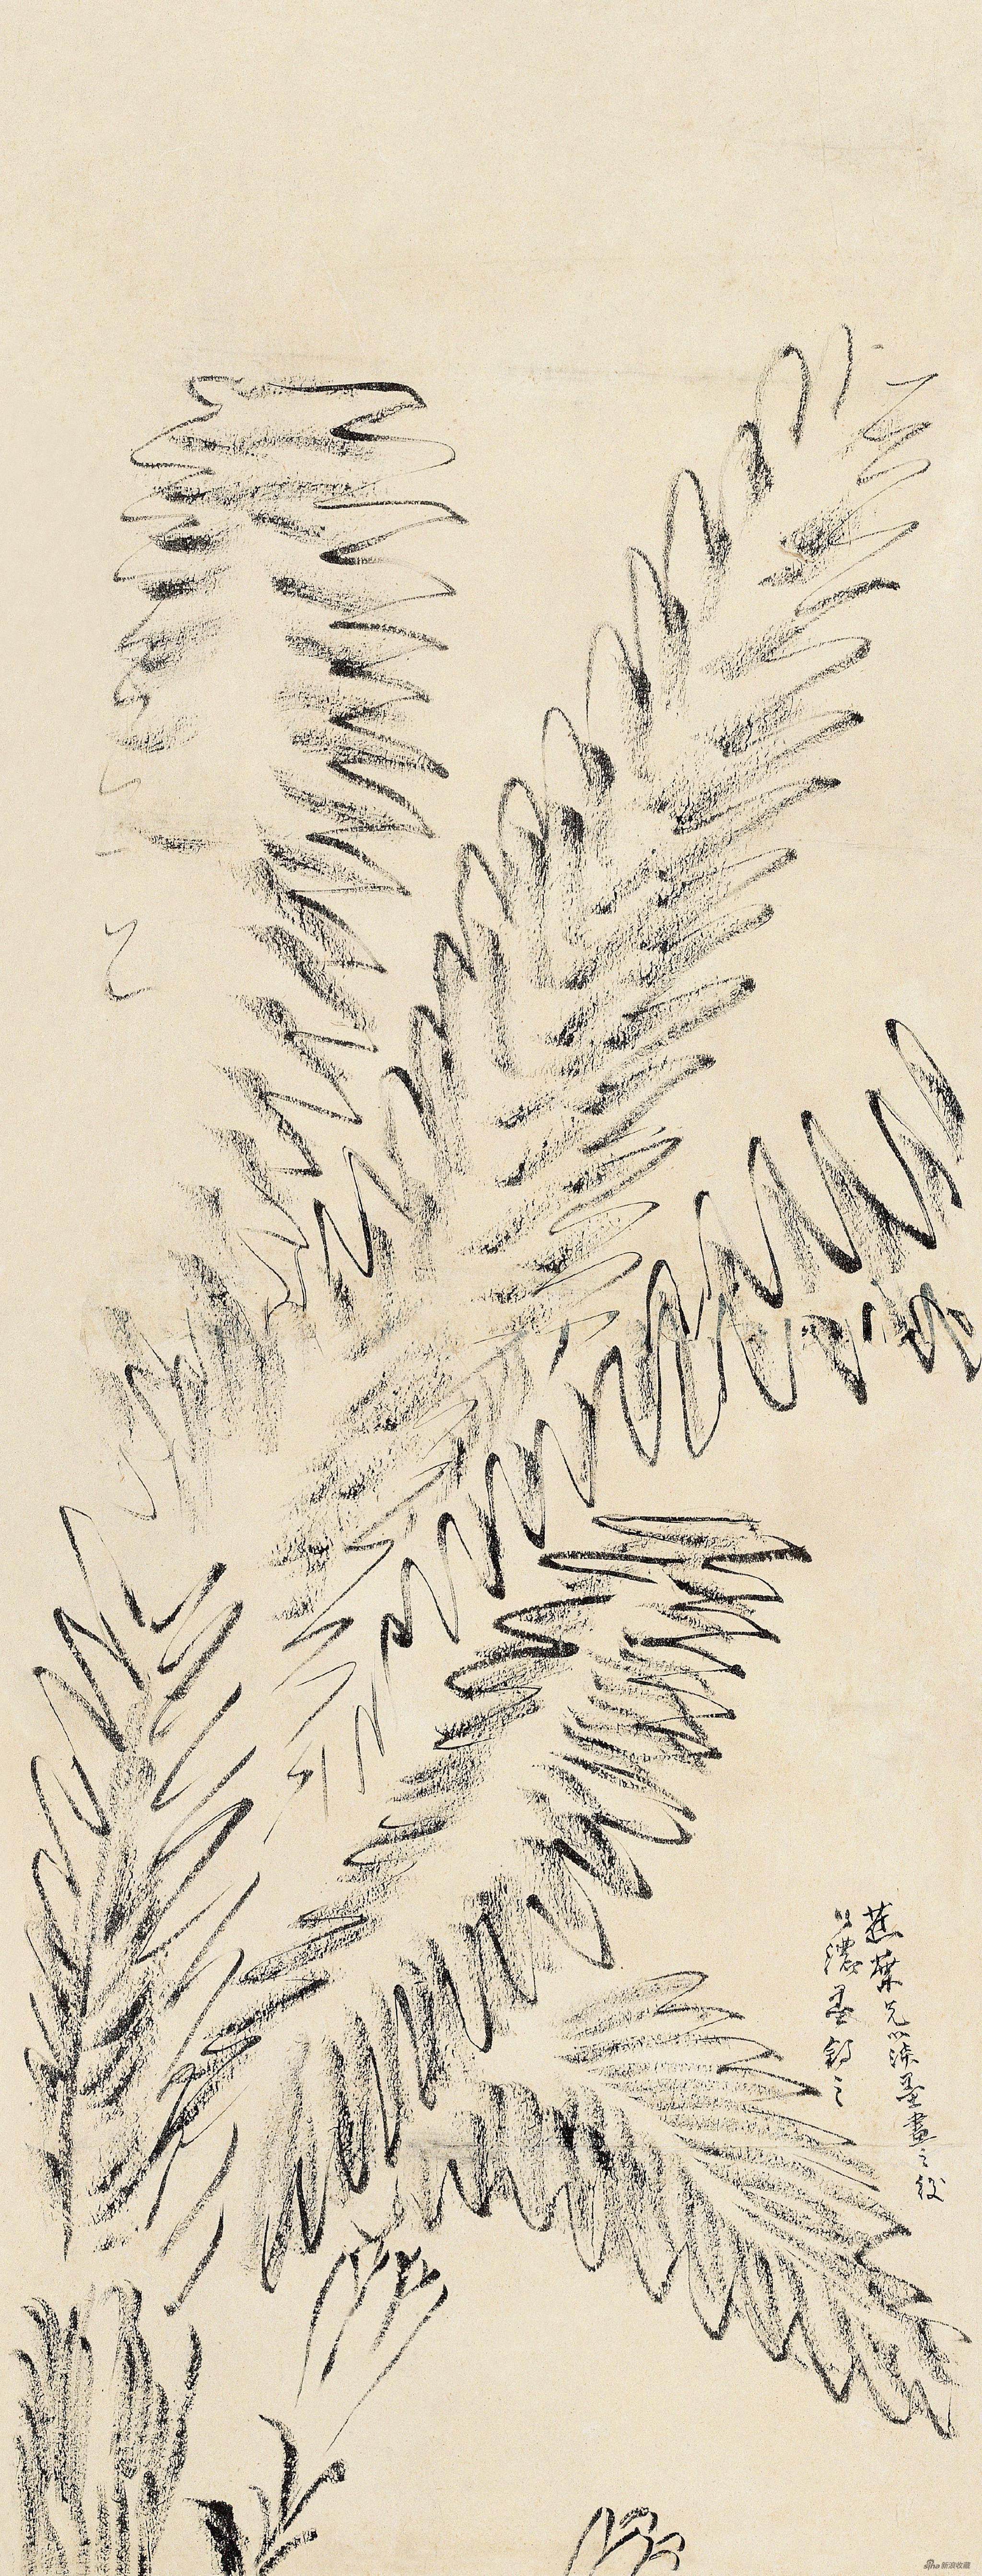 蕉叶图稿 齐白石 74.5cm×29cm 纸本水墨 无年款 北京画院藏